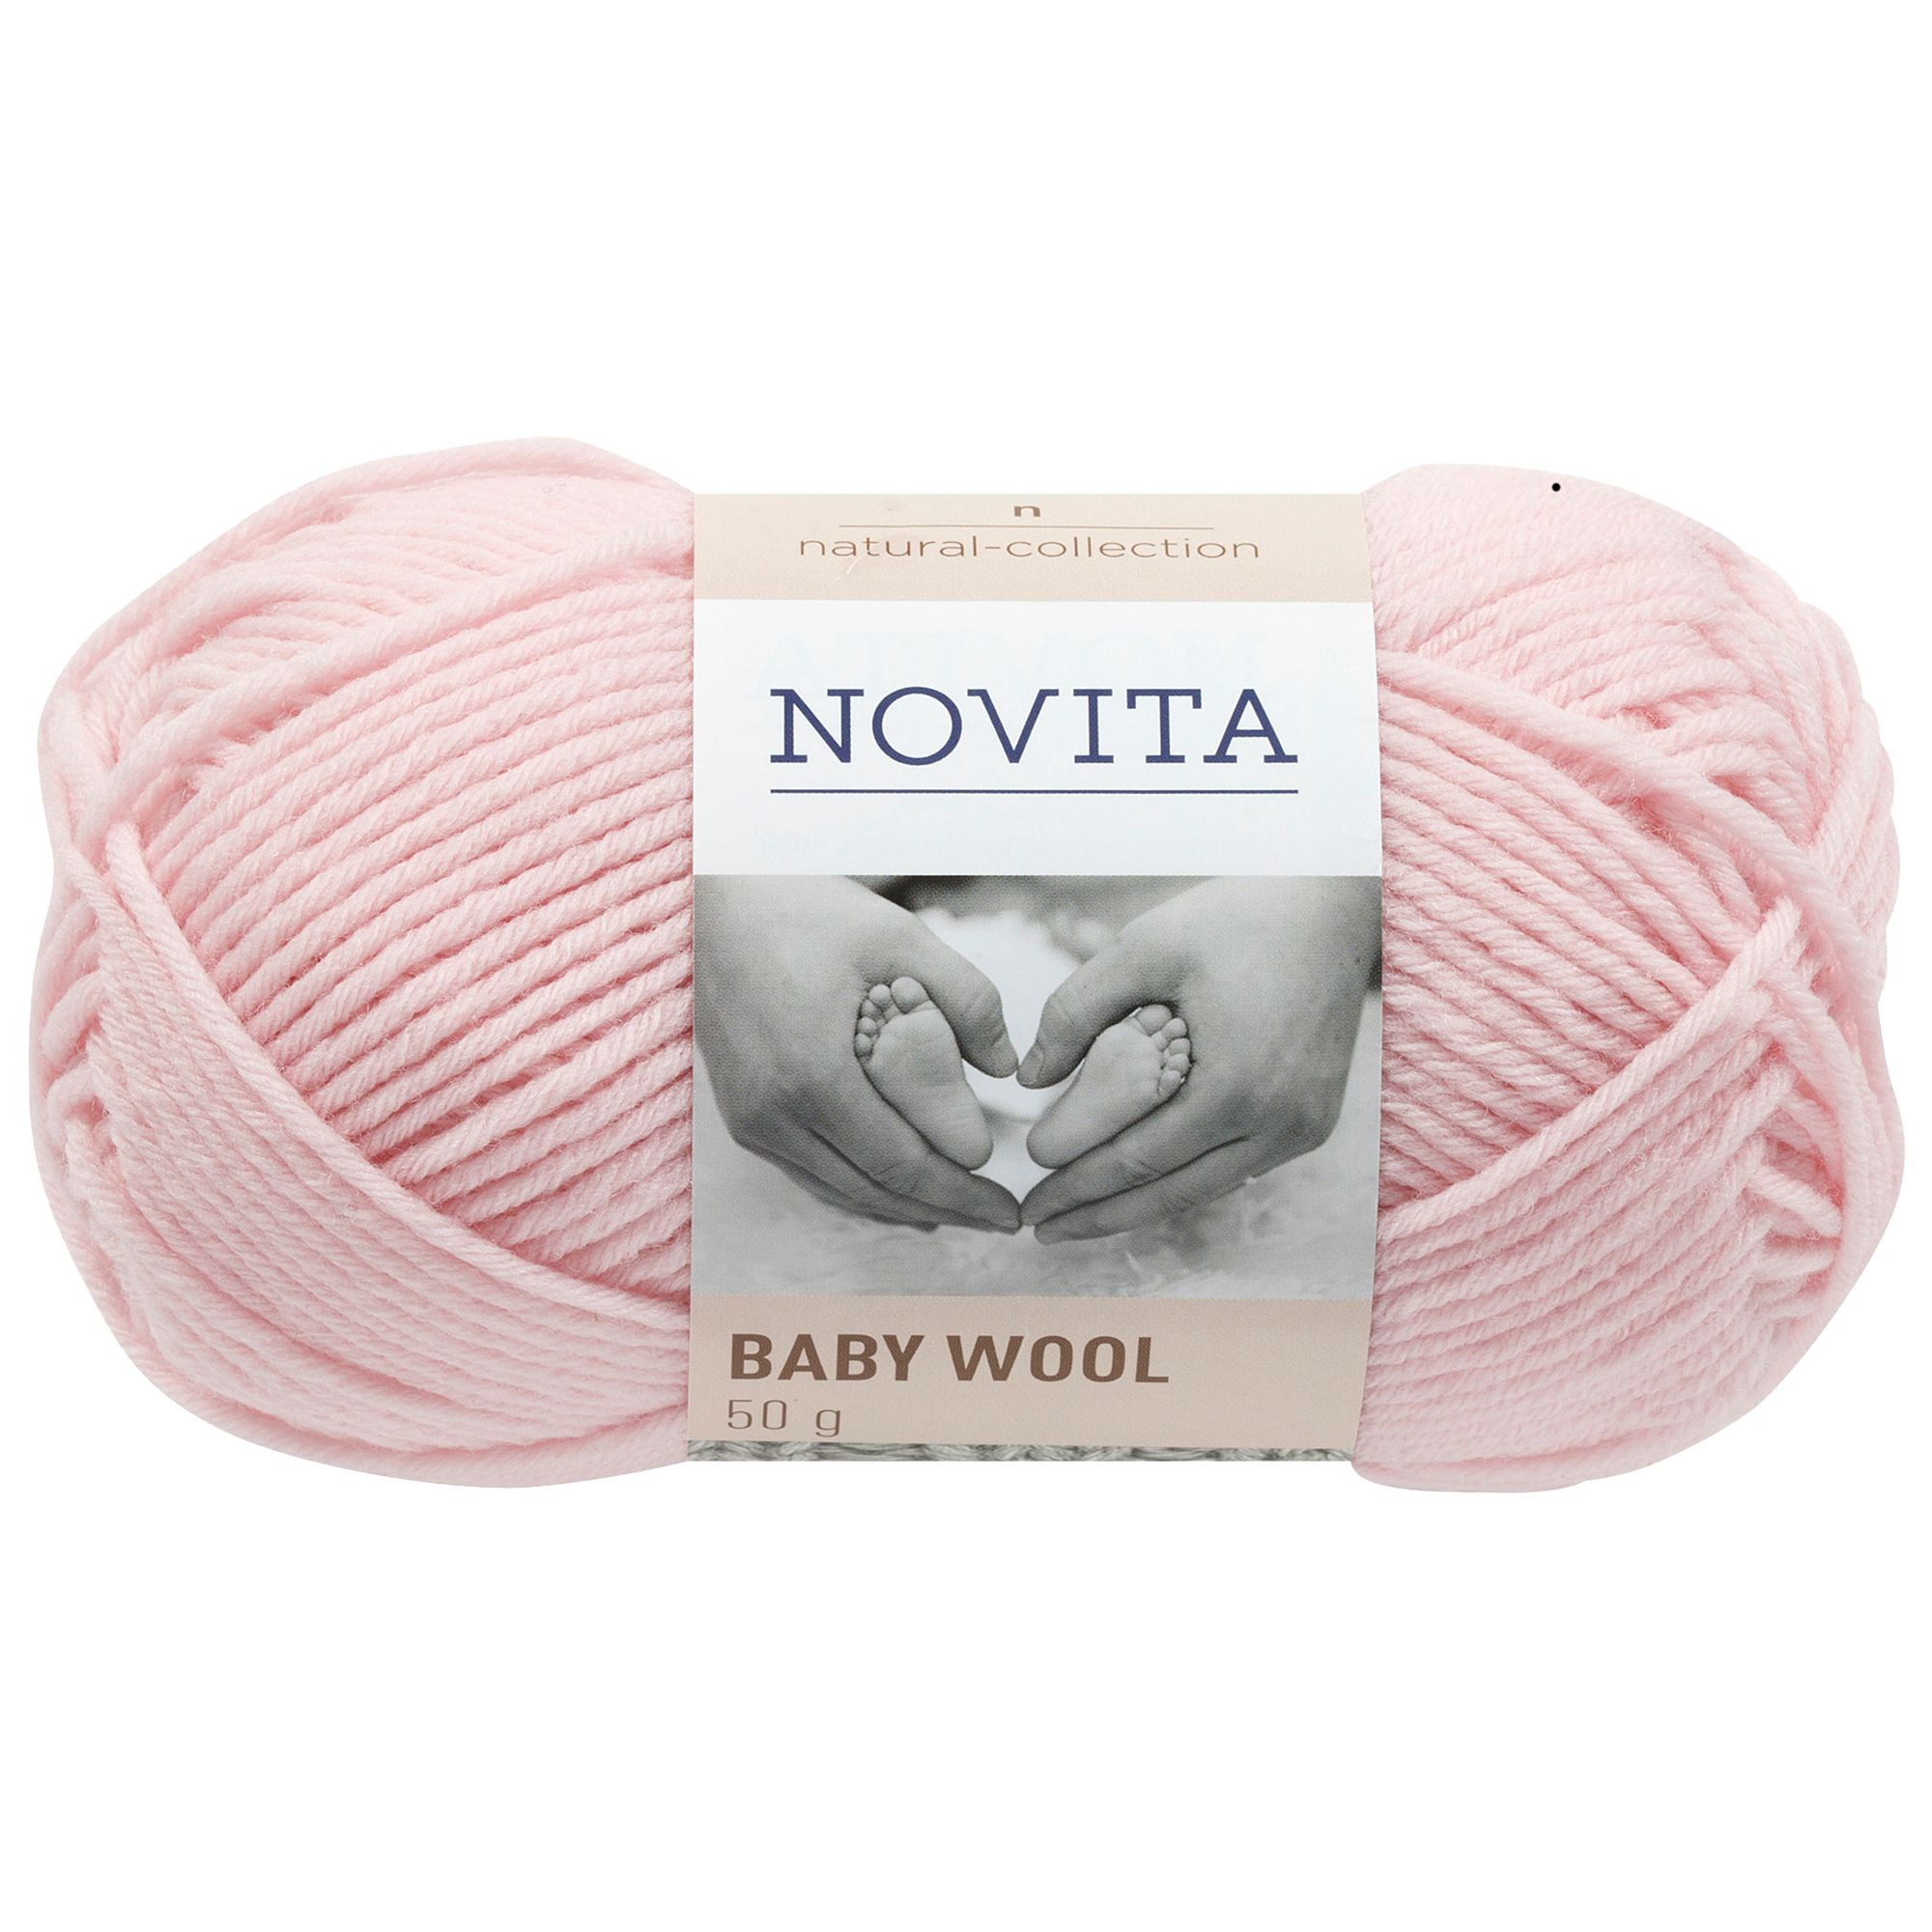 buy baby wool online